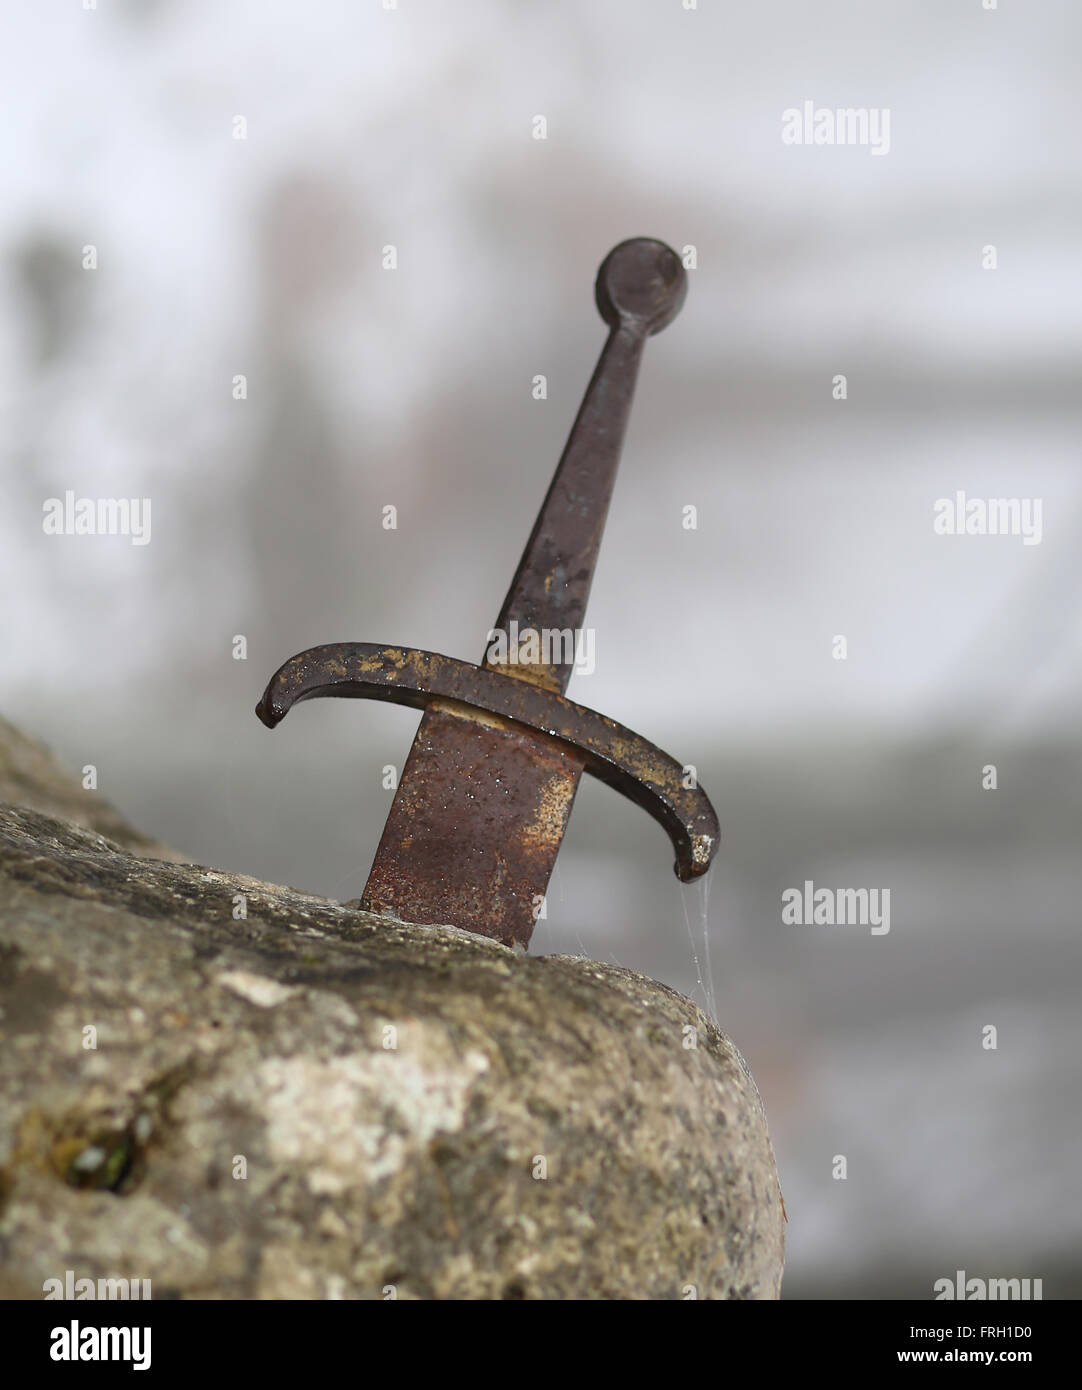 L'épée légendaire Excalibur dans la pierre au milieu de la forêt en hiver Banque D'Images